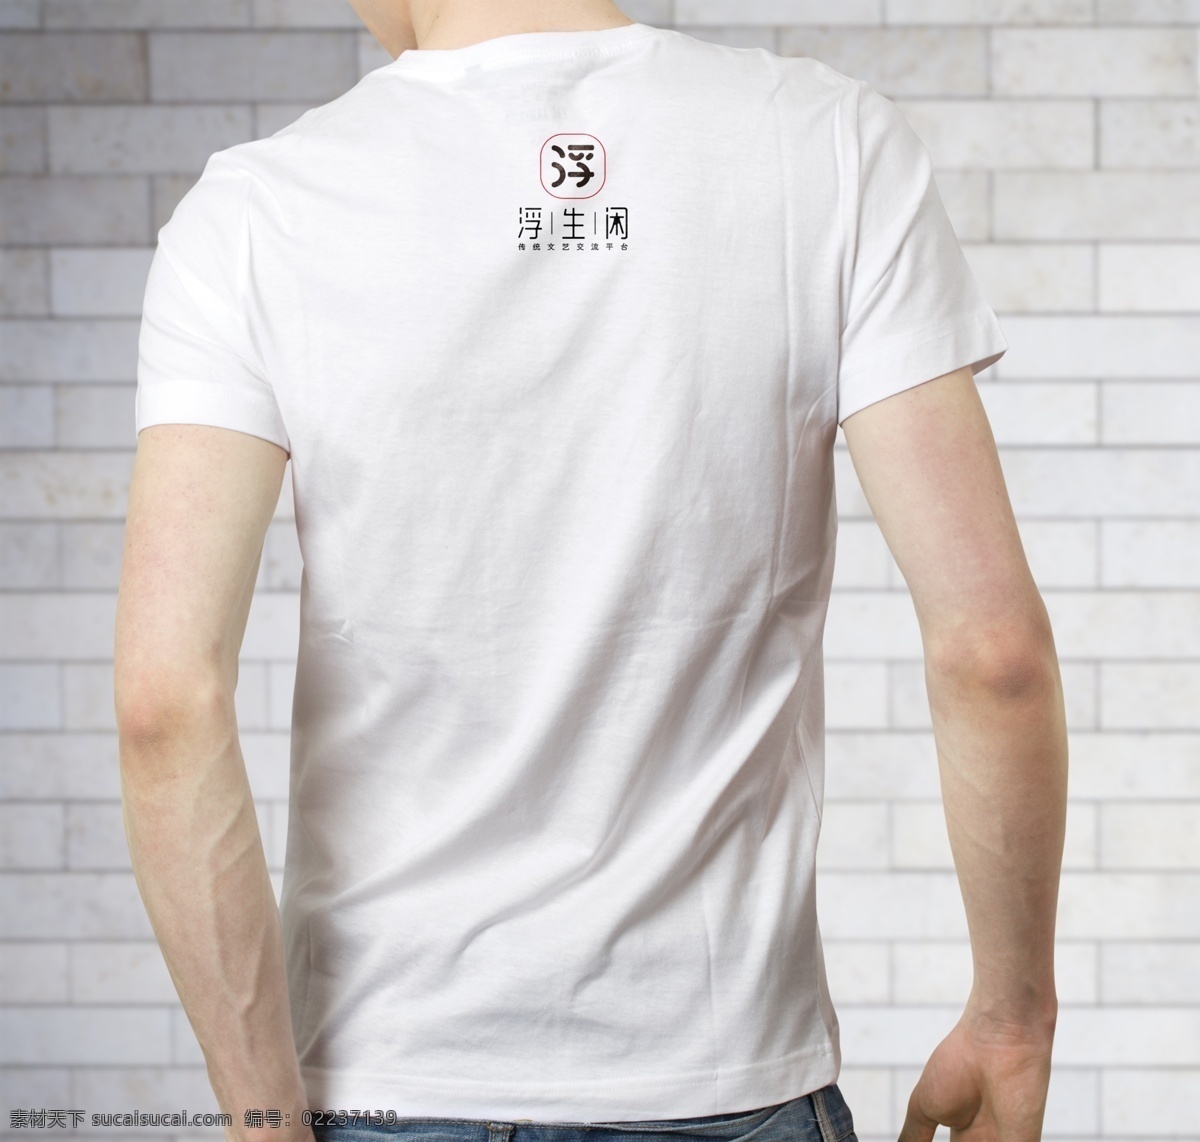 白色t恤贴图 logo 标志贴图 样机 t恤 短袖 白色 衣服 生活百科 办公用品